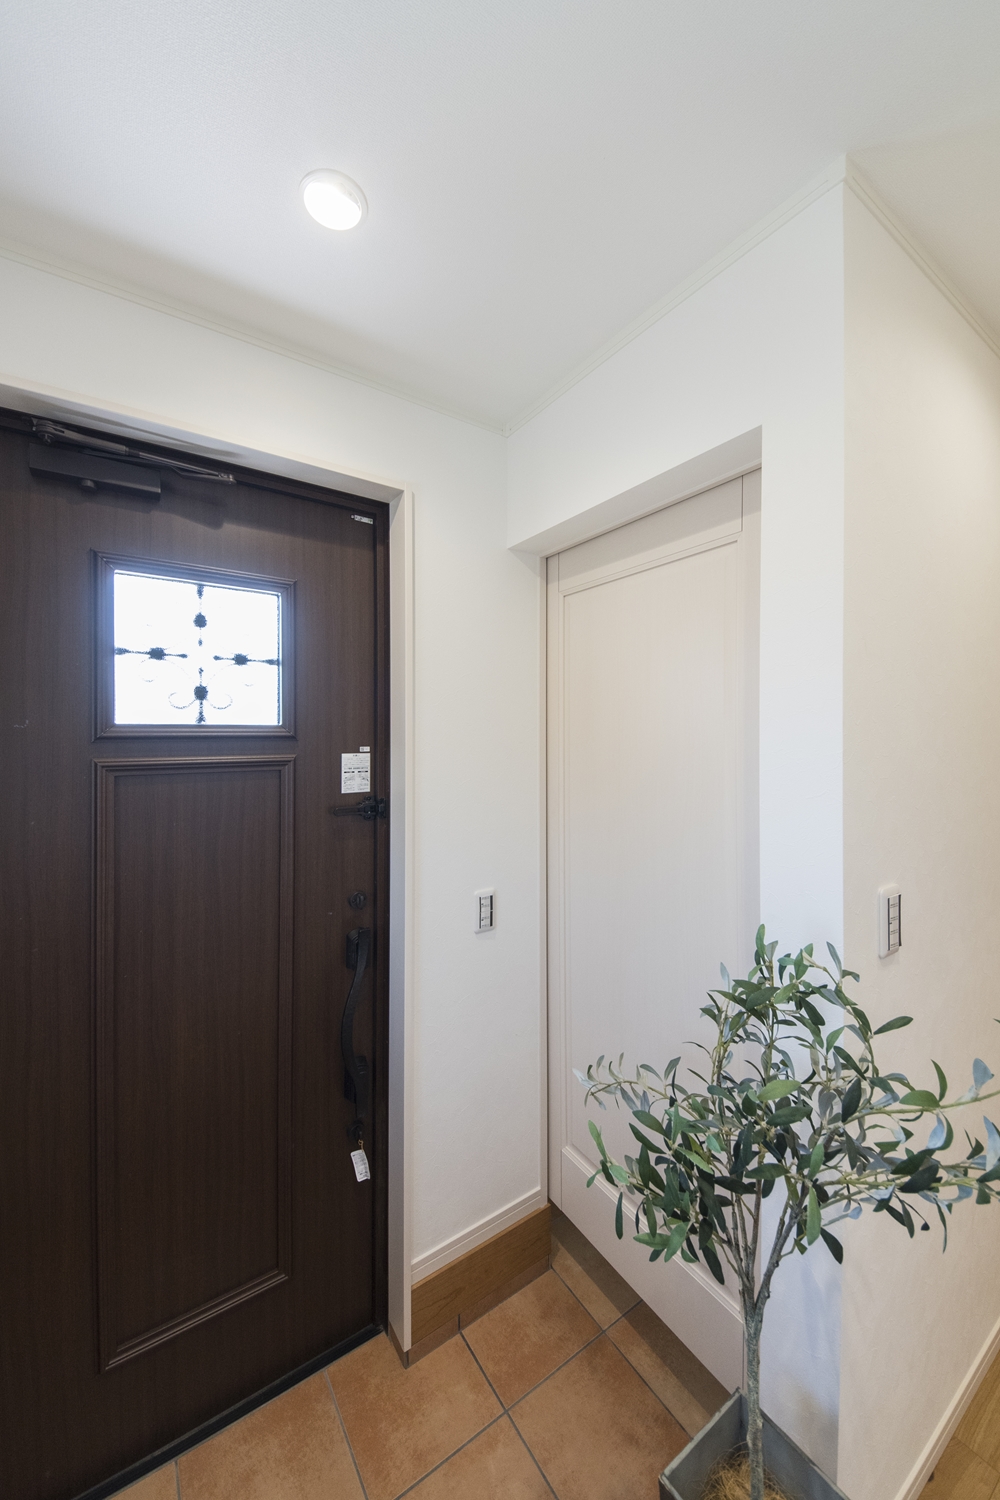 木の温もり感じる玄関ドアや収納、レッドのテラコッタ調タイルがナチュラルテイストな空間を演出。